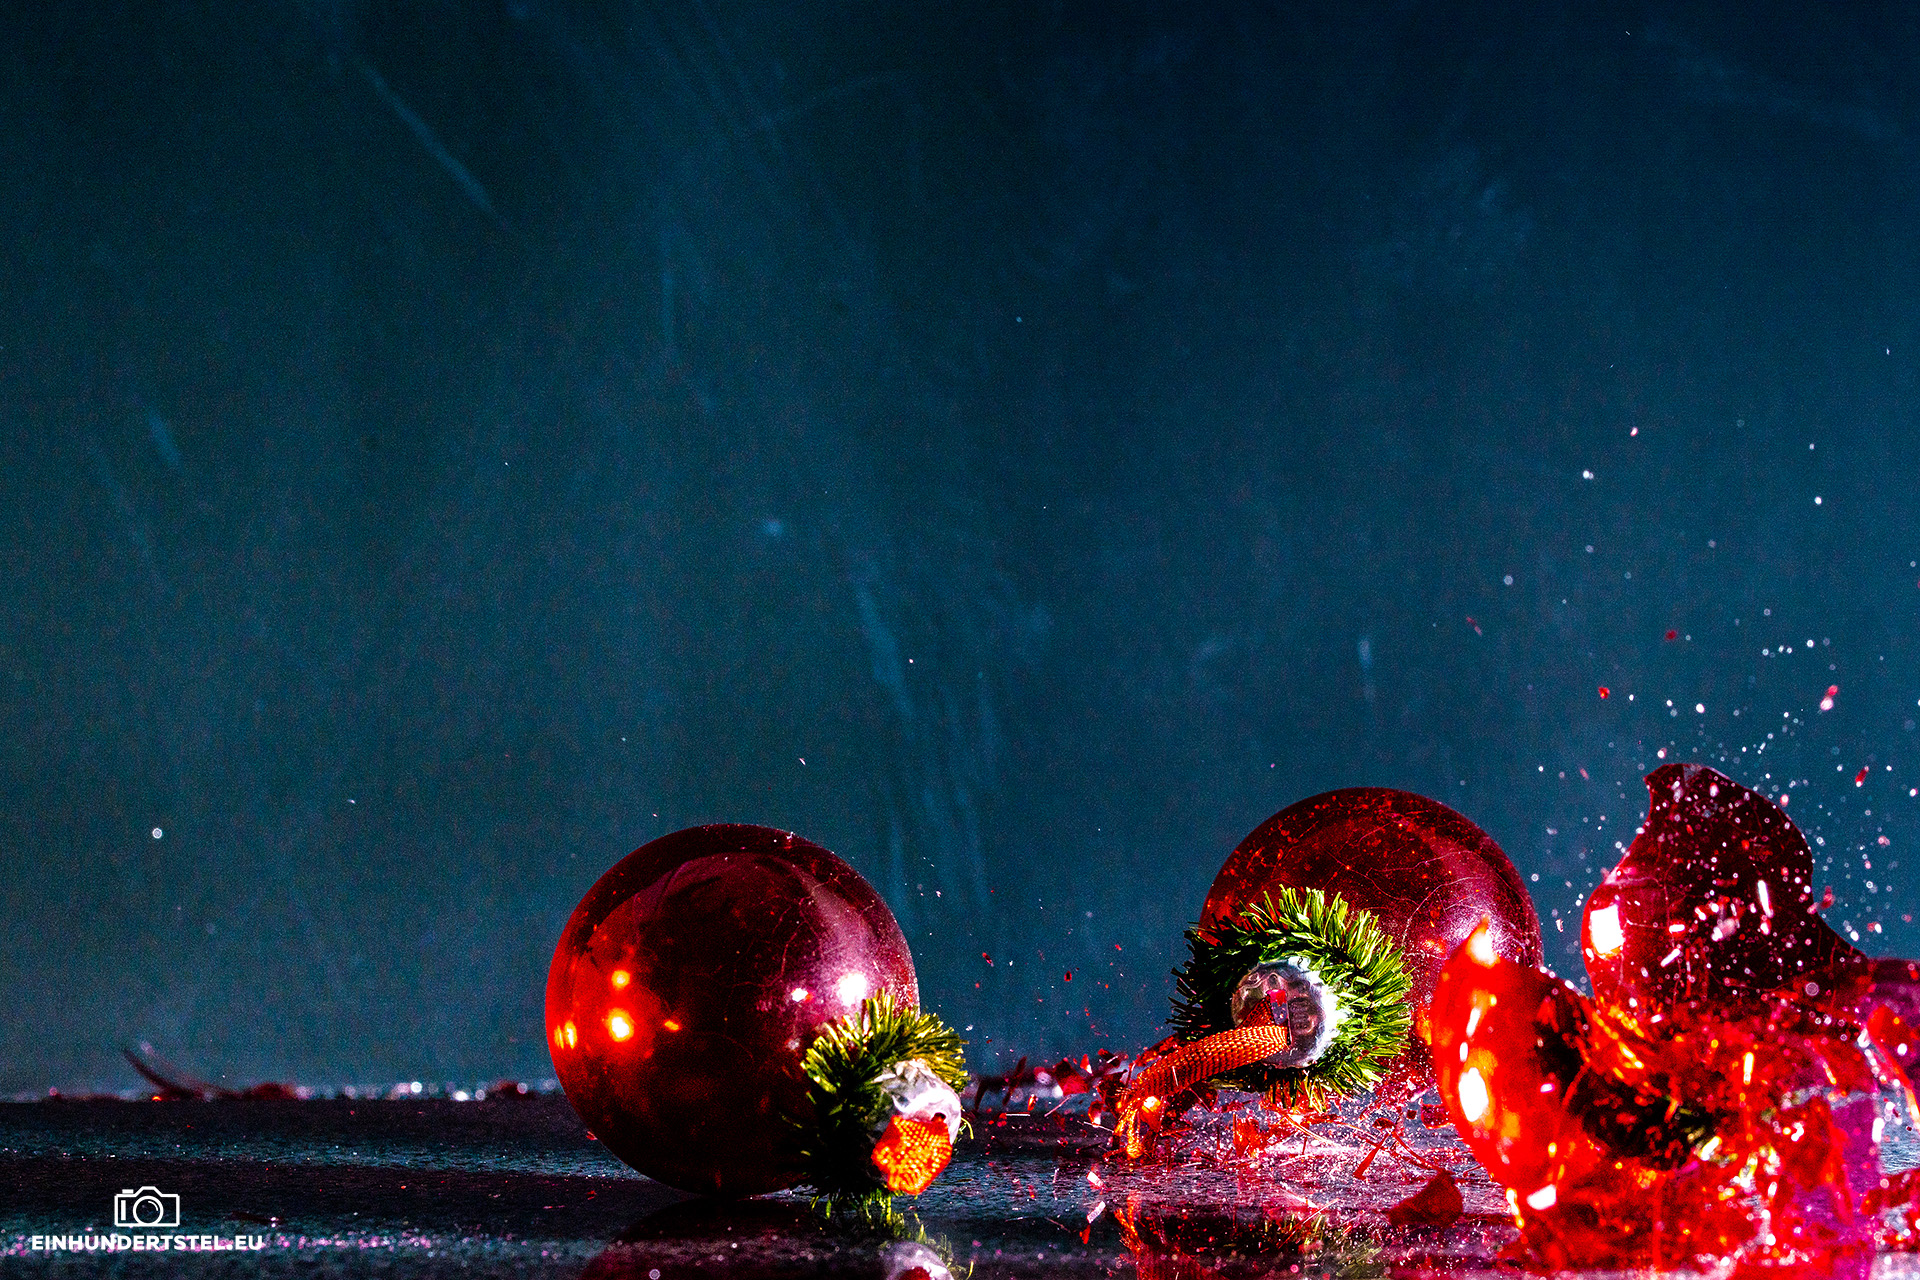 Mit Pulver gefüllte Weihnachtskugeln zerplatzen auf dem Boden. Splitter fliegen durch die Luft.